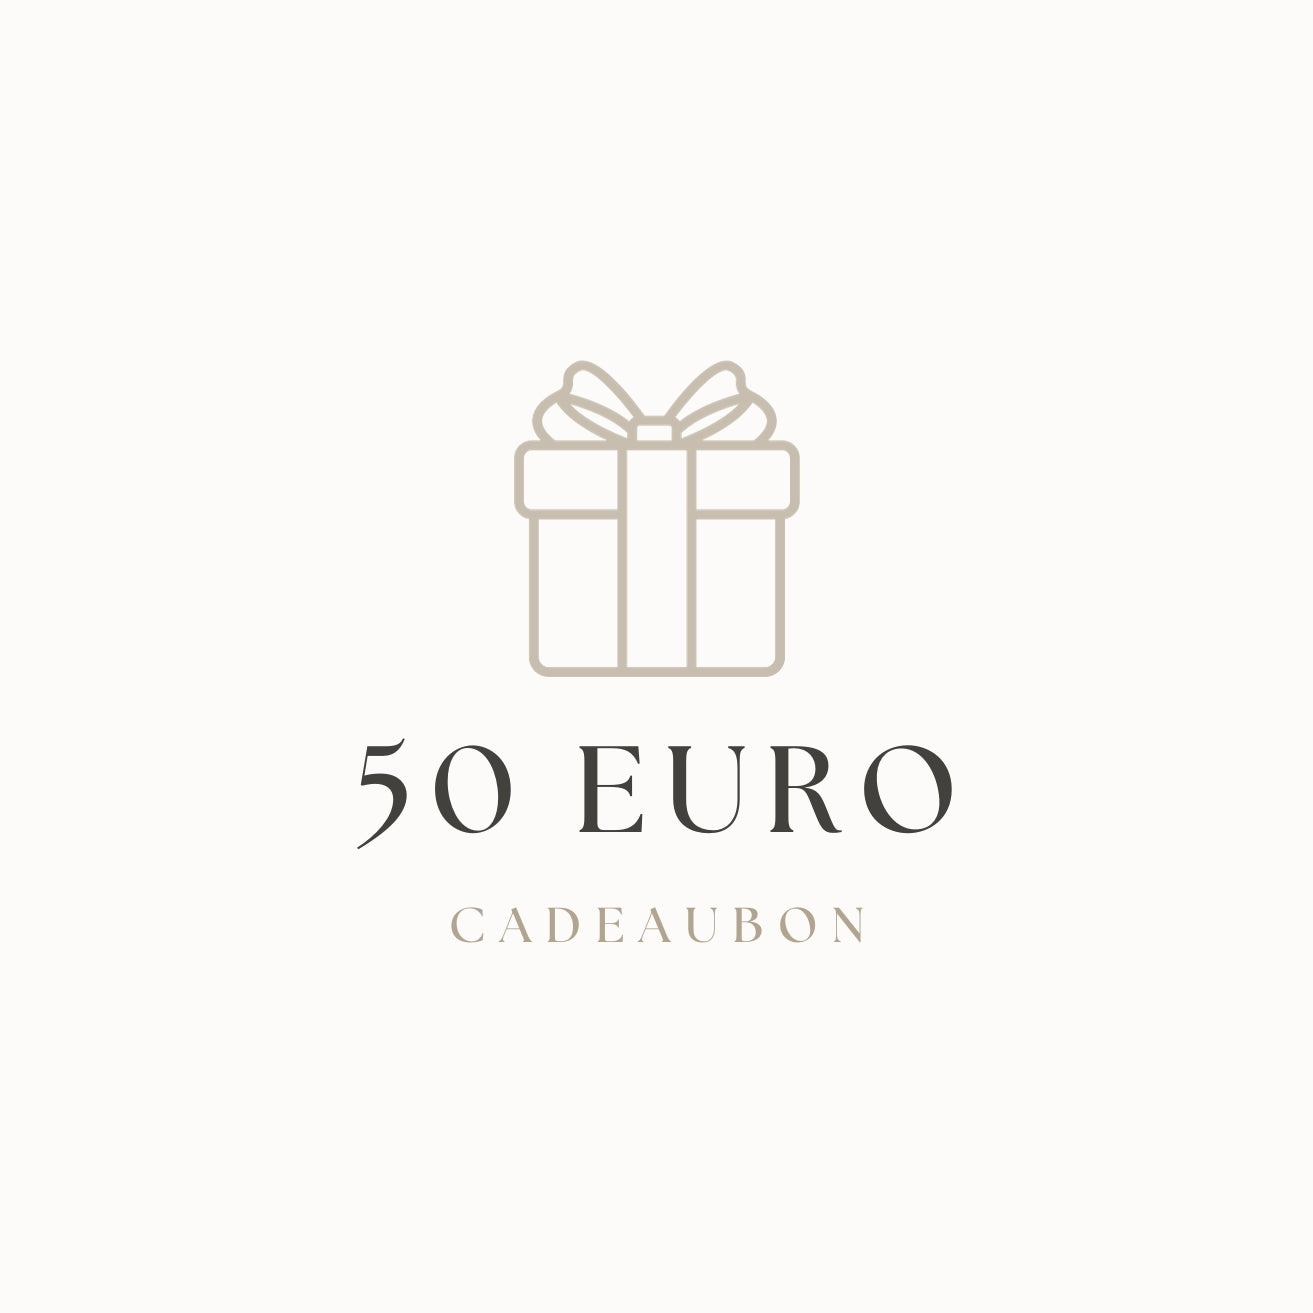 Chèque cadeau | 50 euros